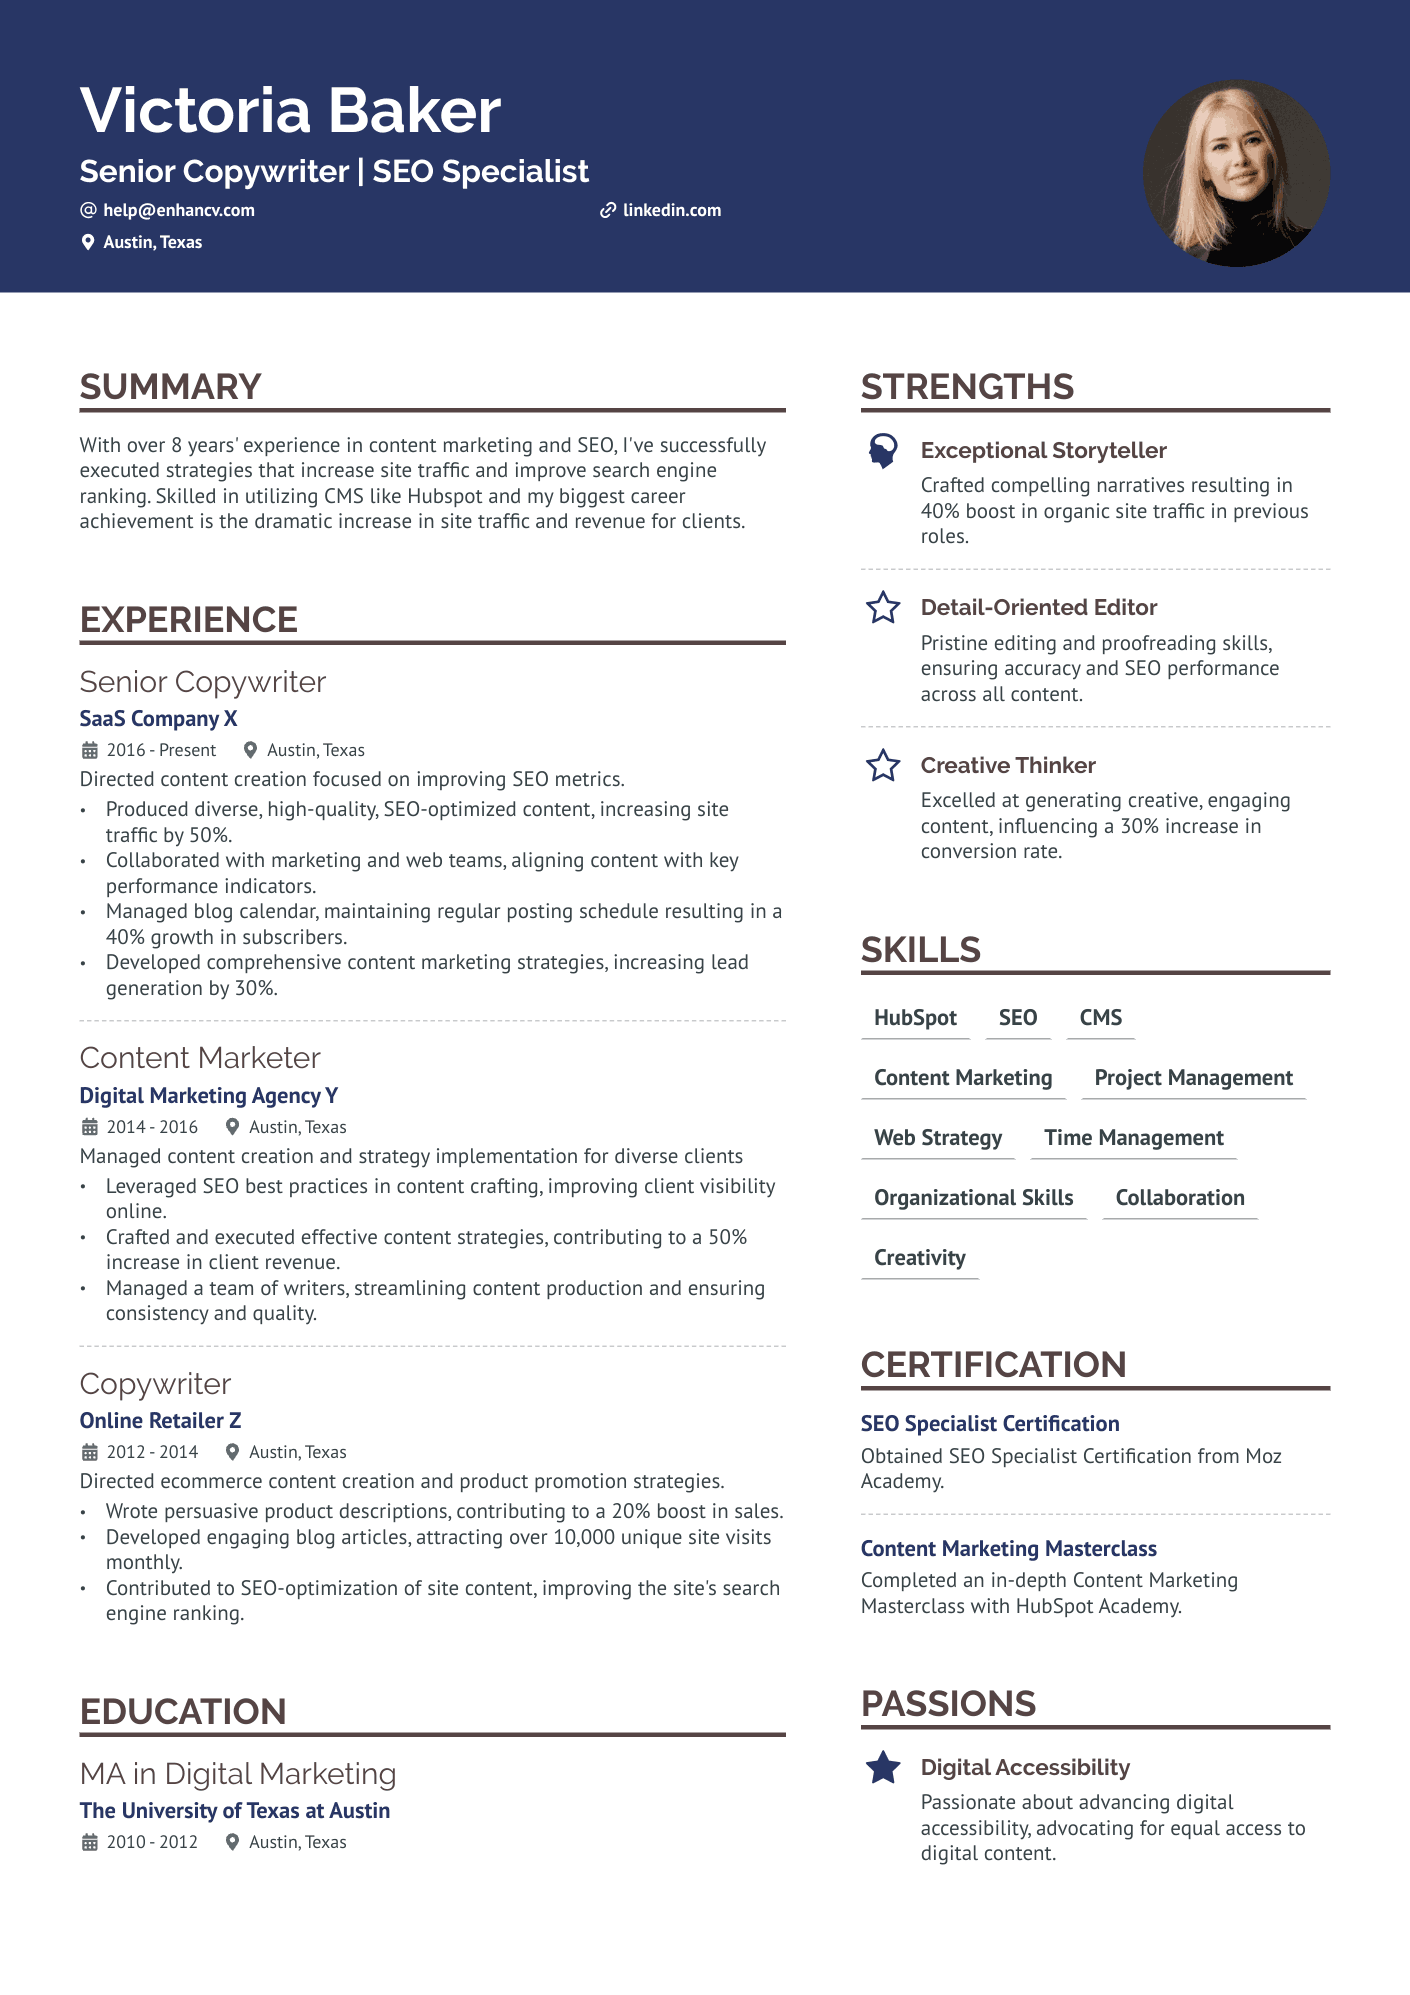 resume sample for copywriter